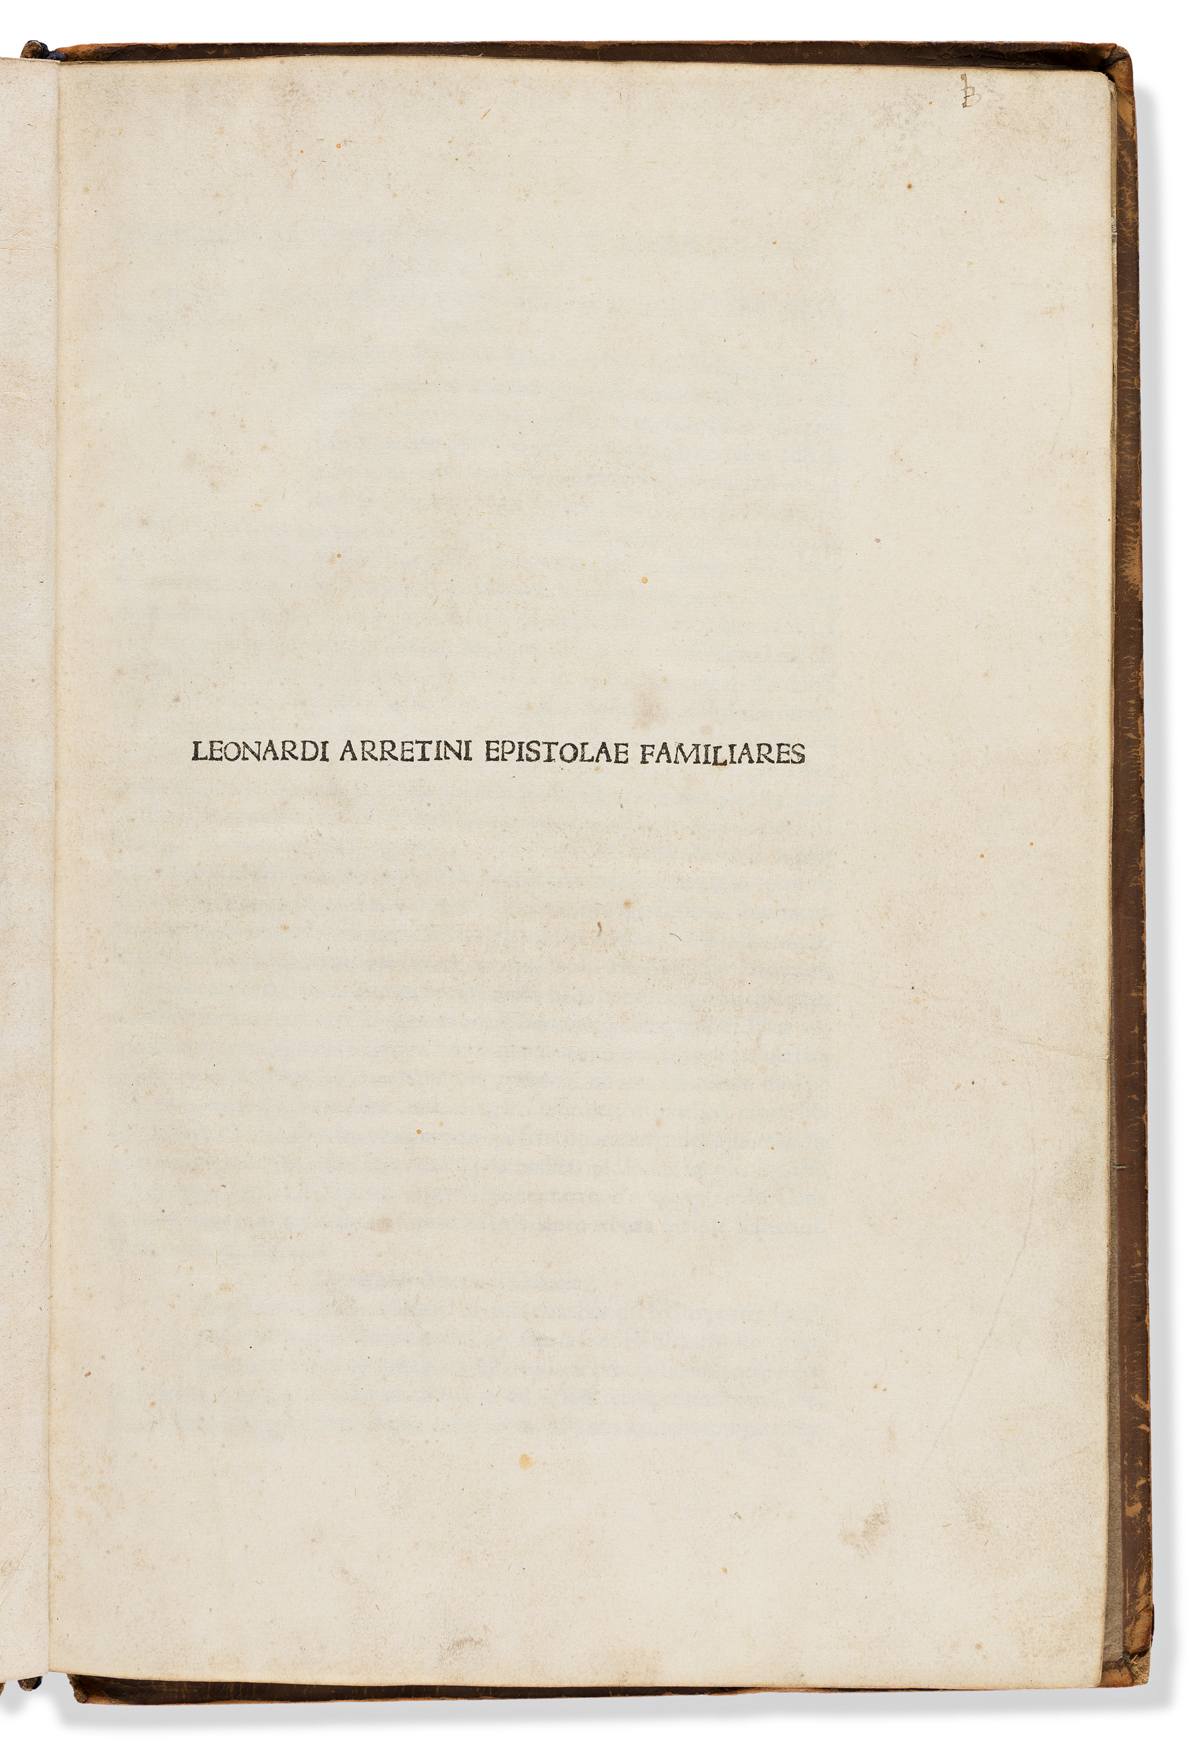 Bruni Aretino, Leonardo (1369-1444) Epistolarum Familiarium Libri VIII.